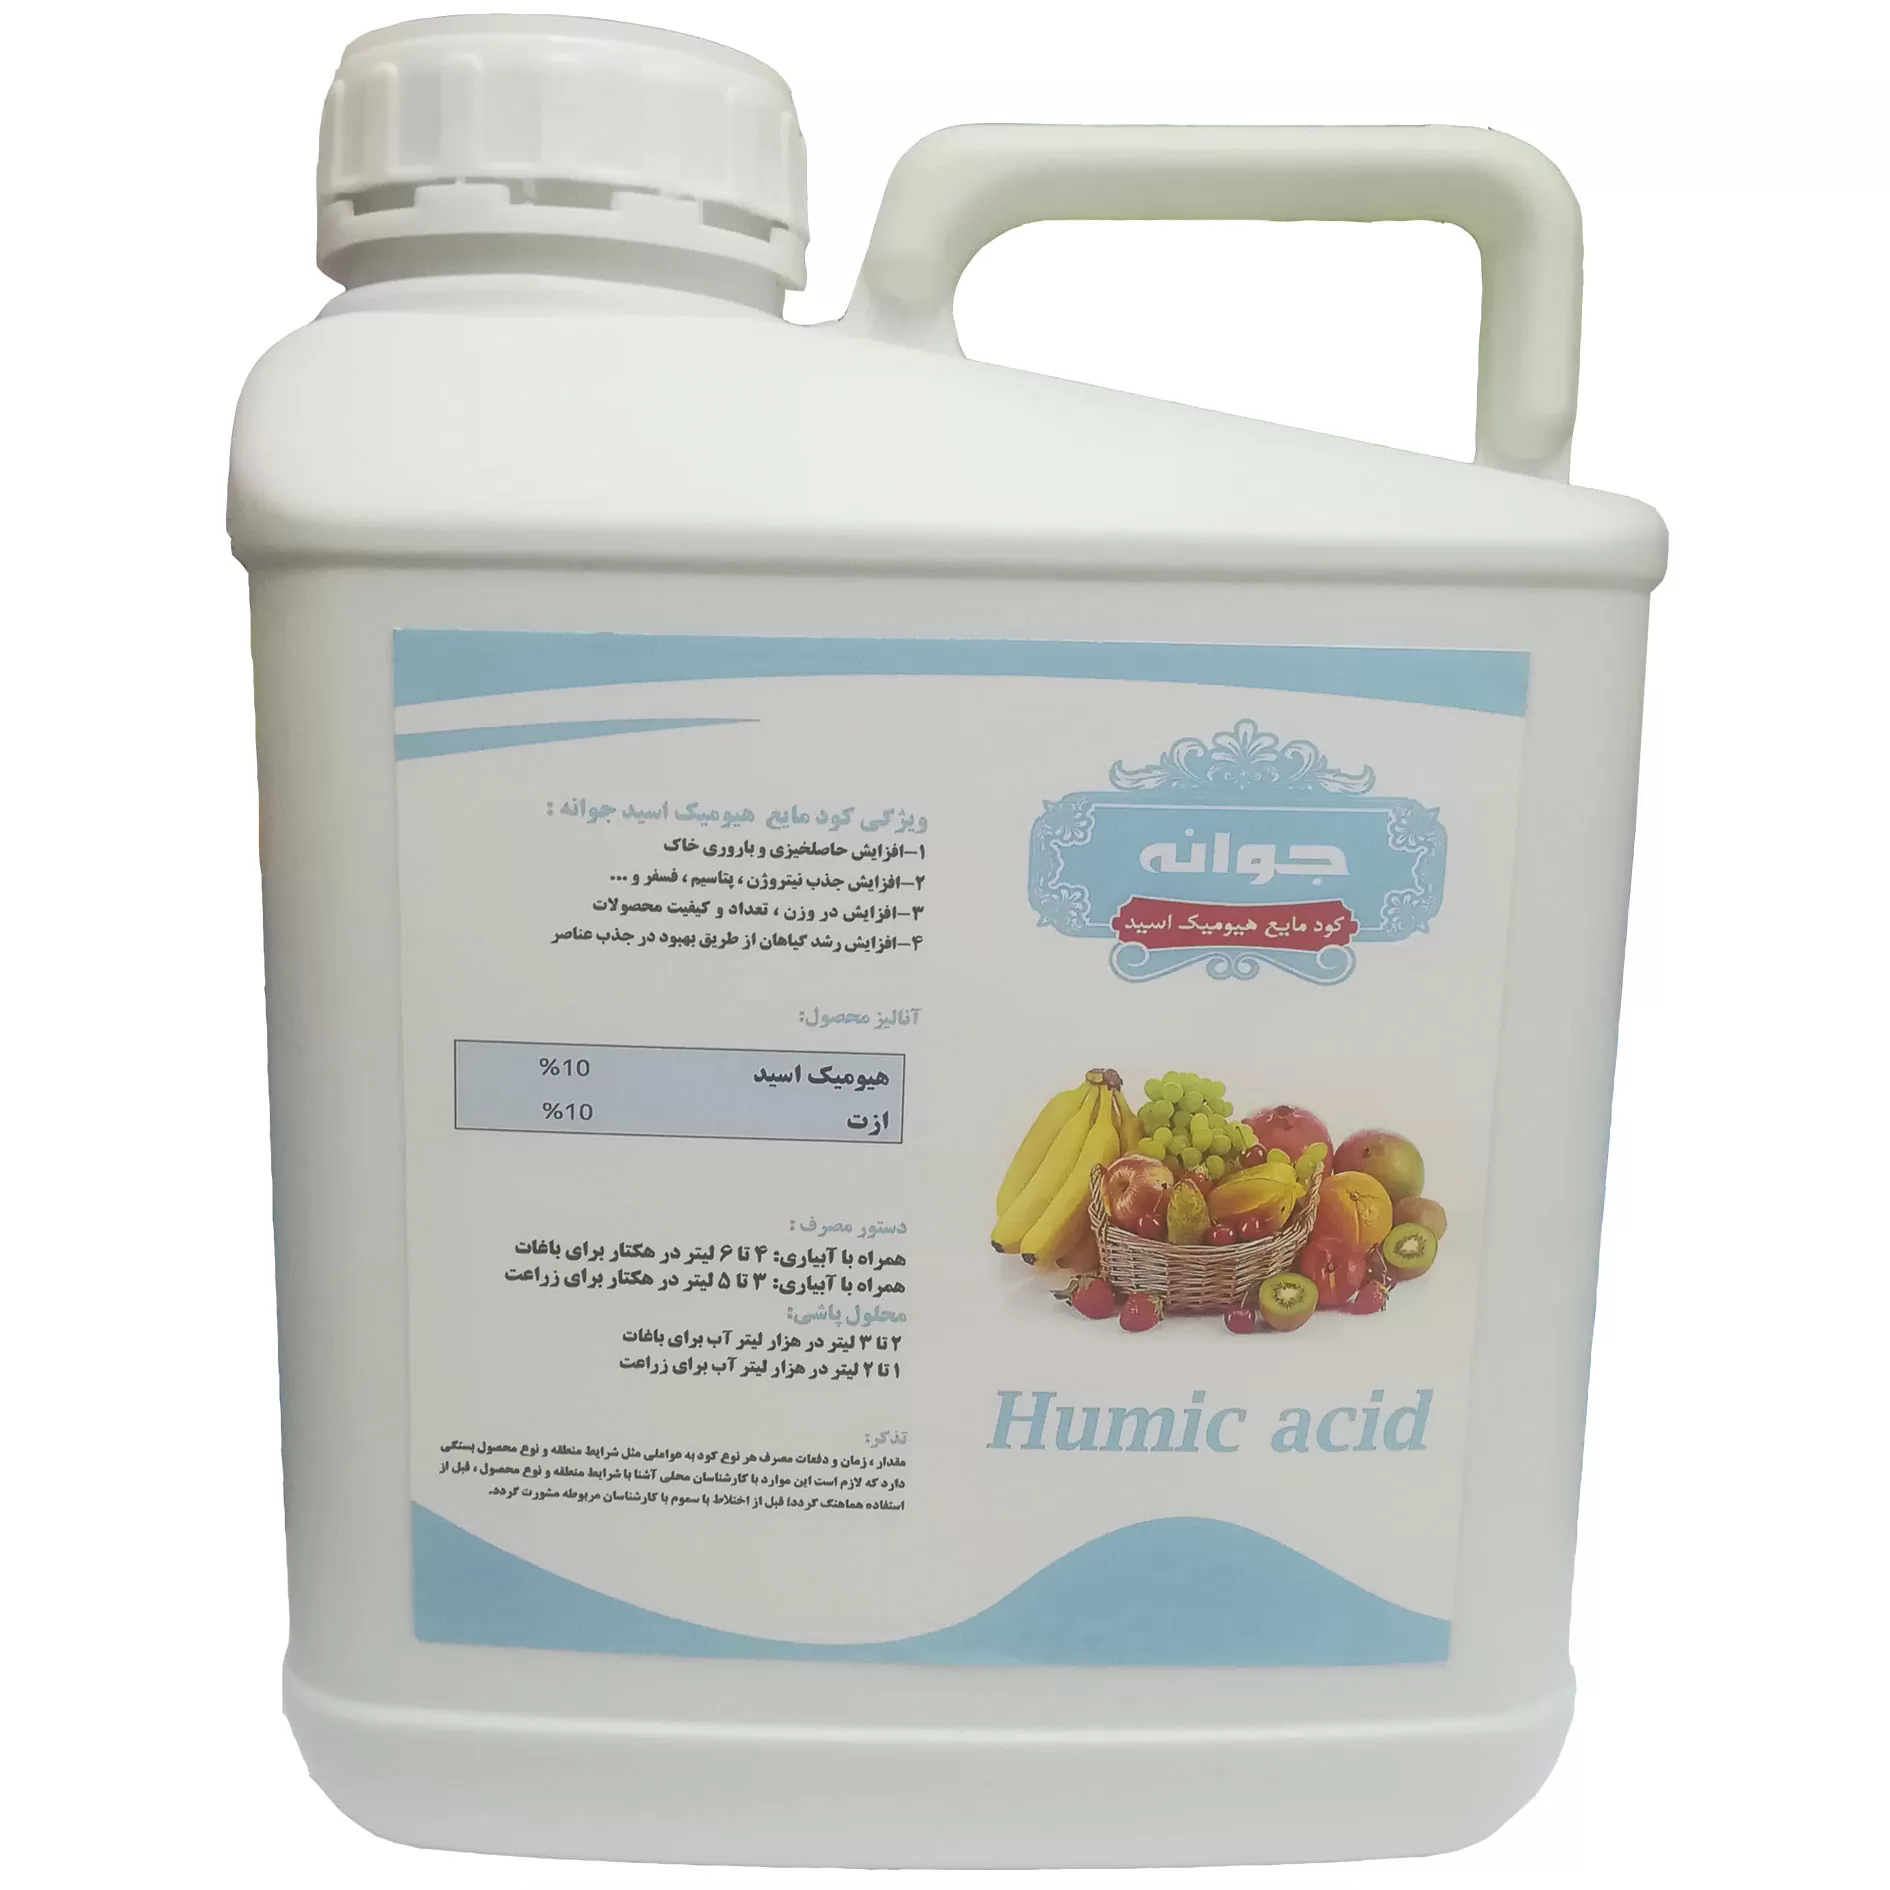 خرید و قیمت کود مایع هیومیک اسید جوانه مدل A1 حجم 5 لیتر